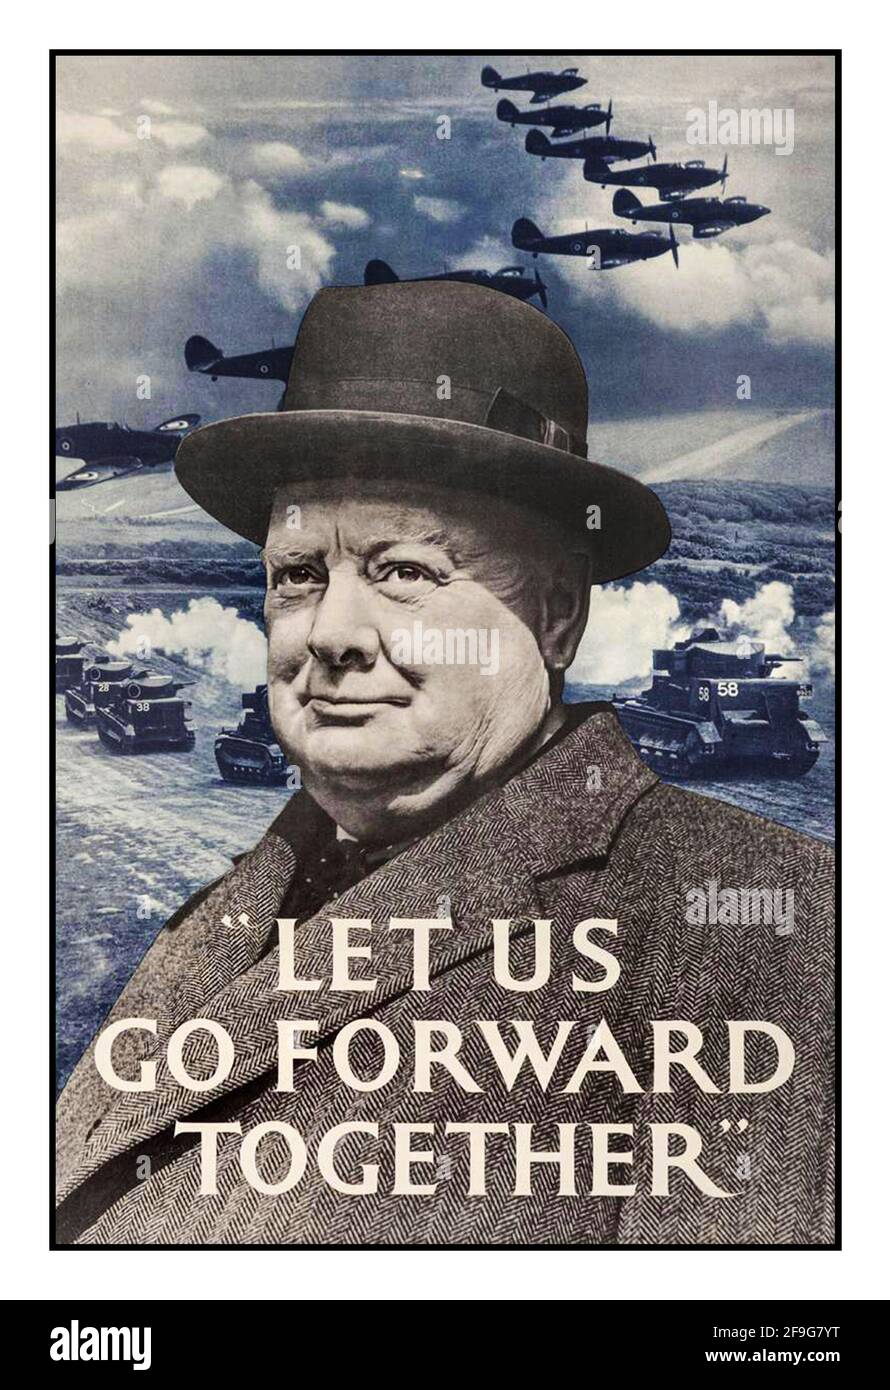 WINSTON CHURCHILL WW2 affiche ancienne du premier ministre Winston Churchill Avec les mots de motivation 'allons de l'avant ensemble' World Guerre II propagande britannique Spitfire avions et chars derrière le monde Deuxième Guerre mondiale Banque D'Images